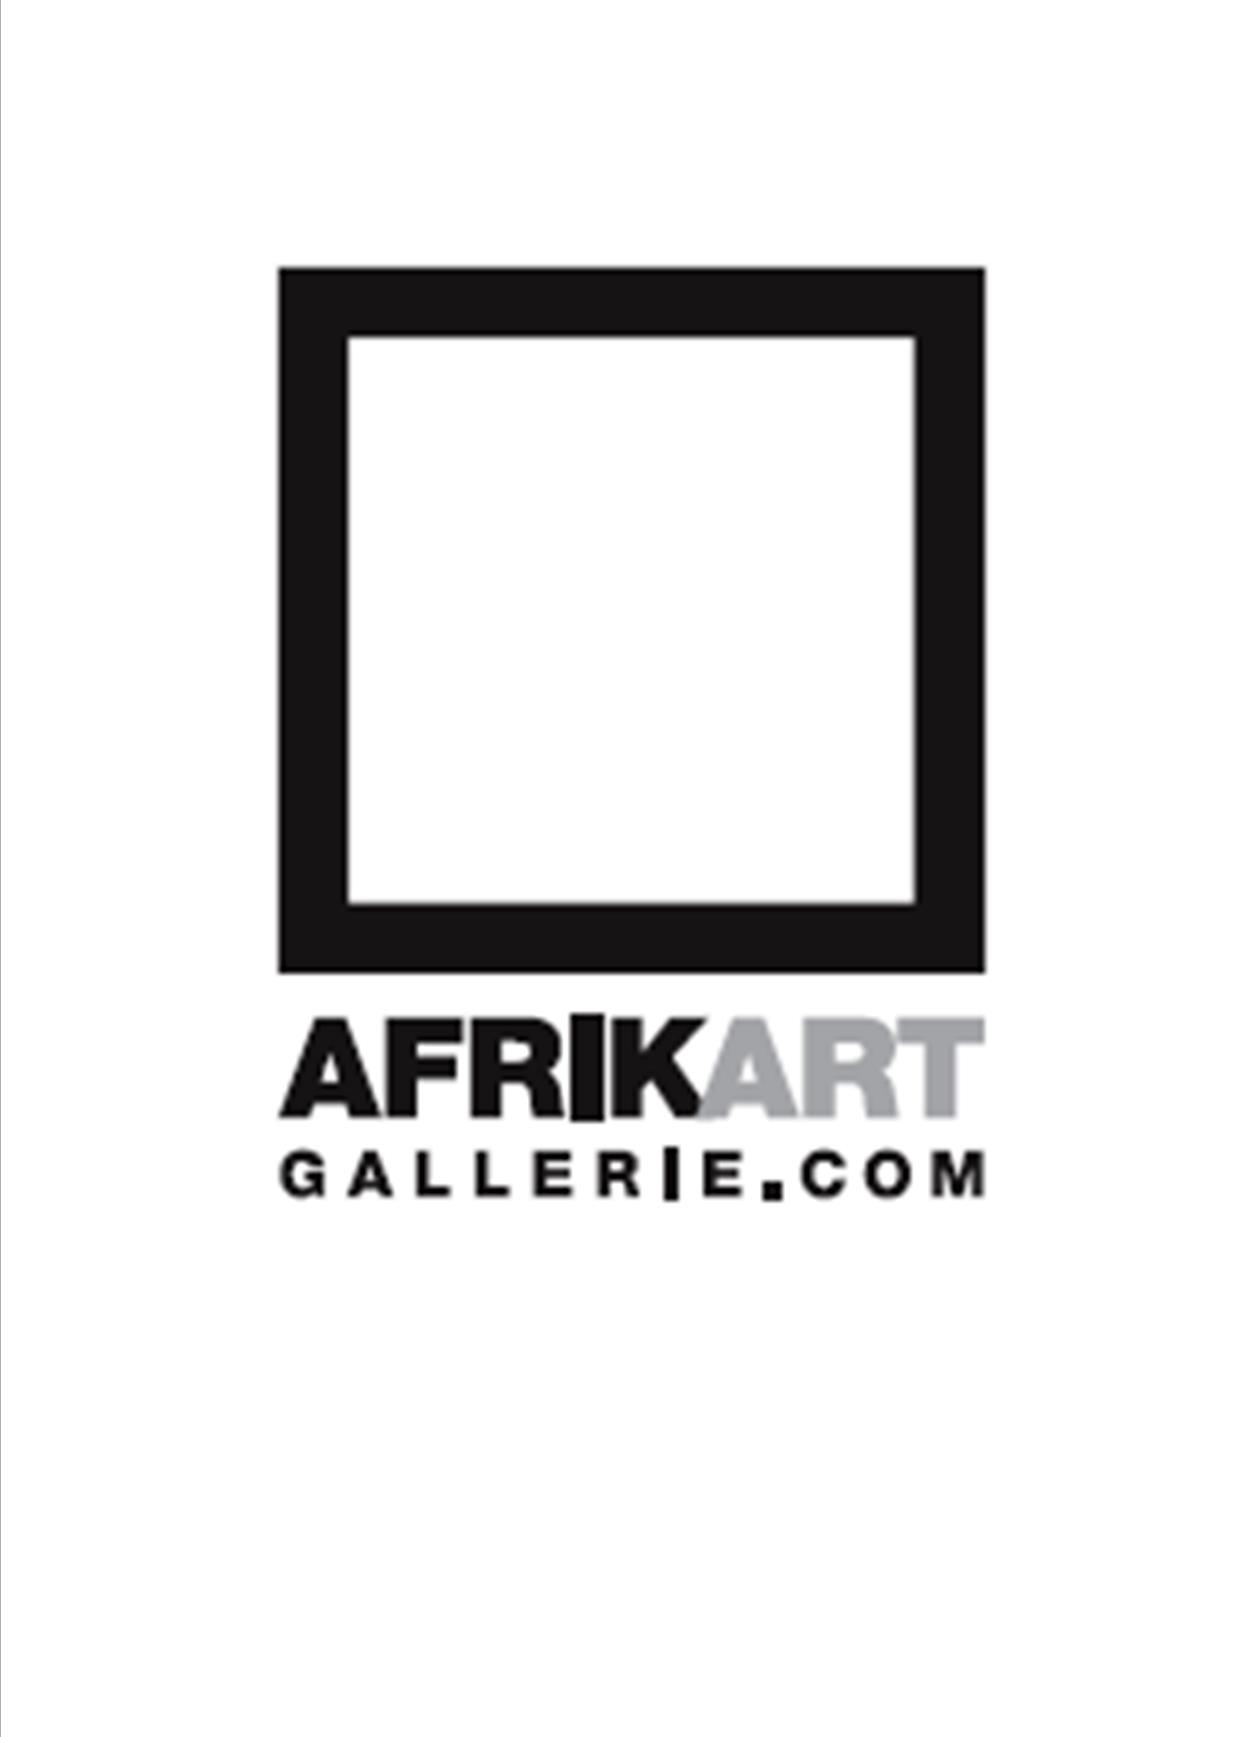 afrikart logo (white)